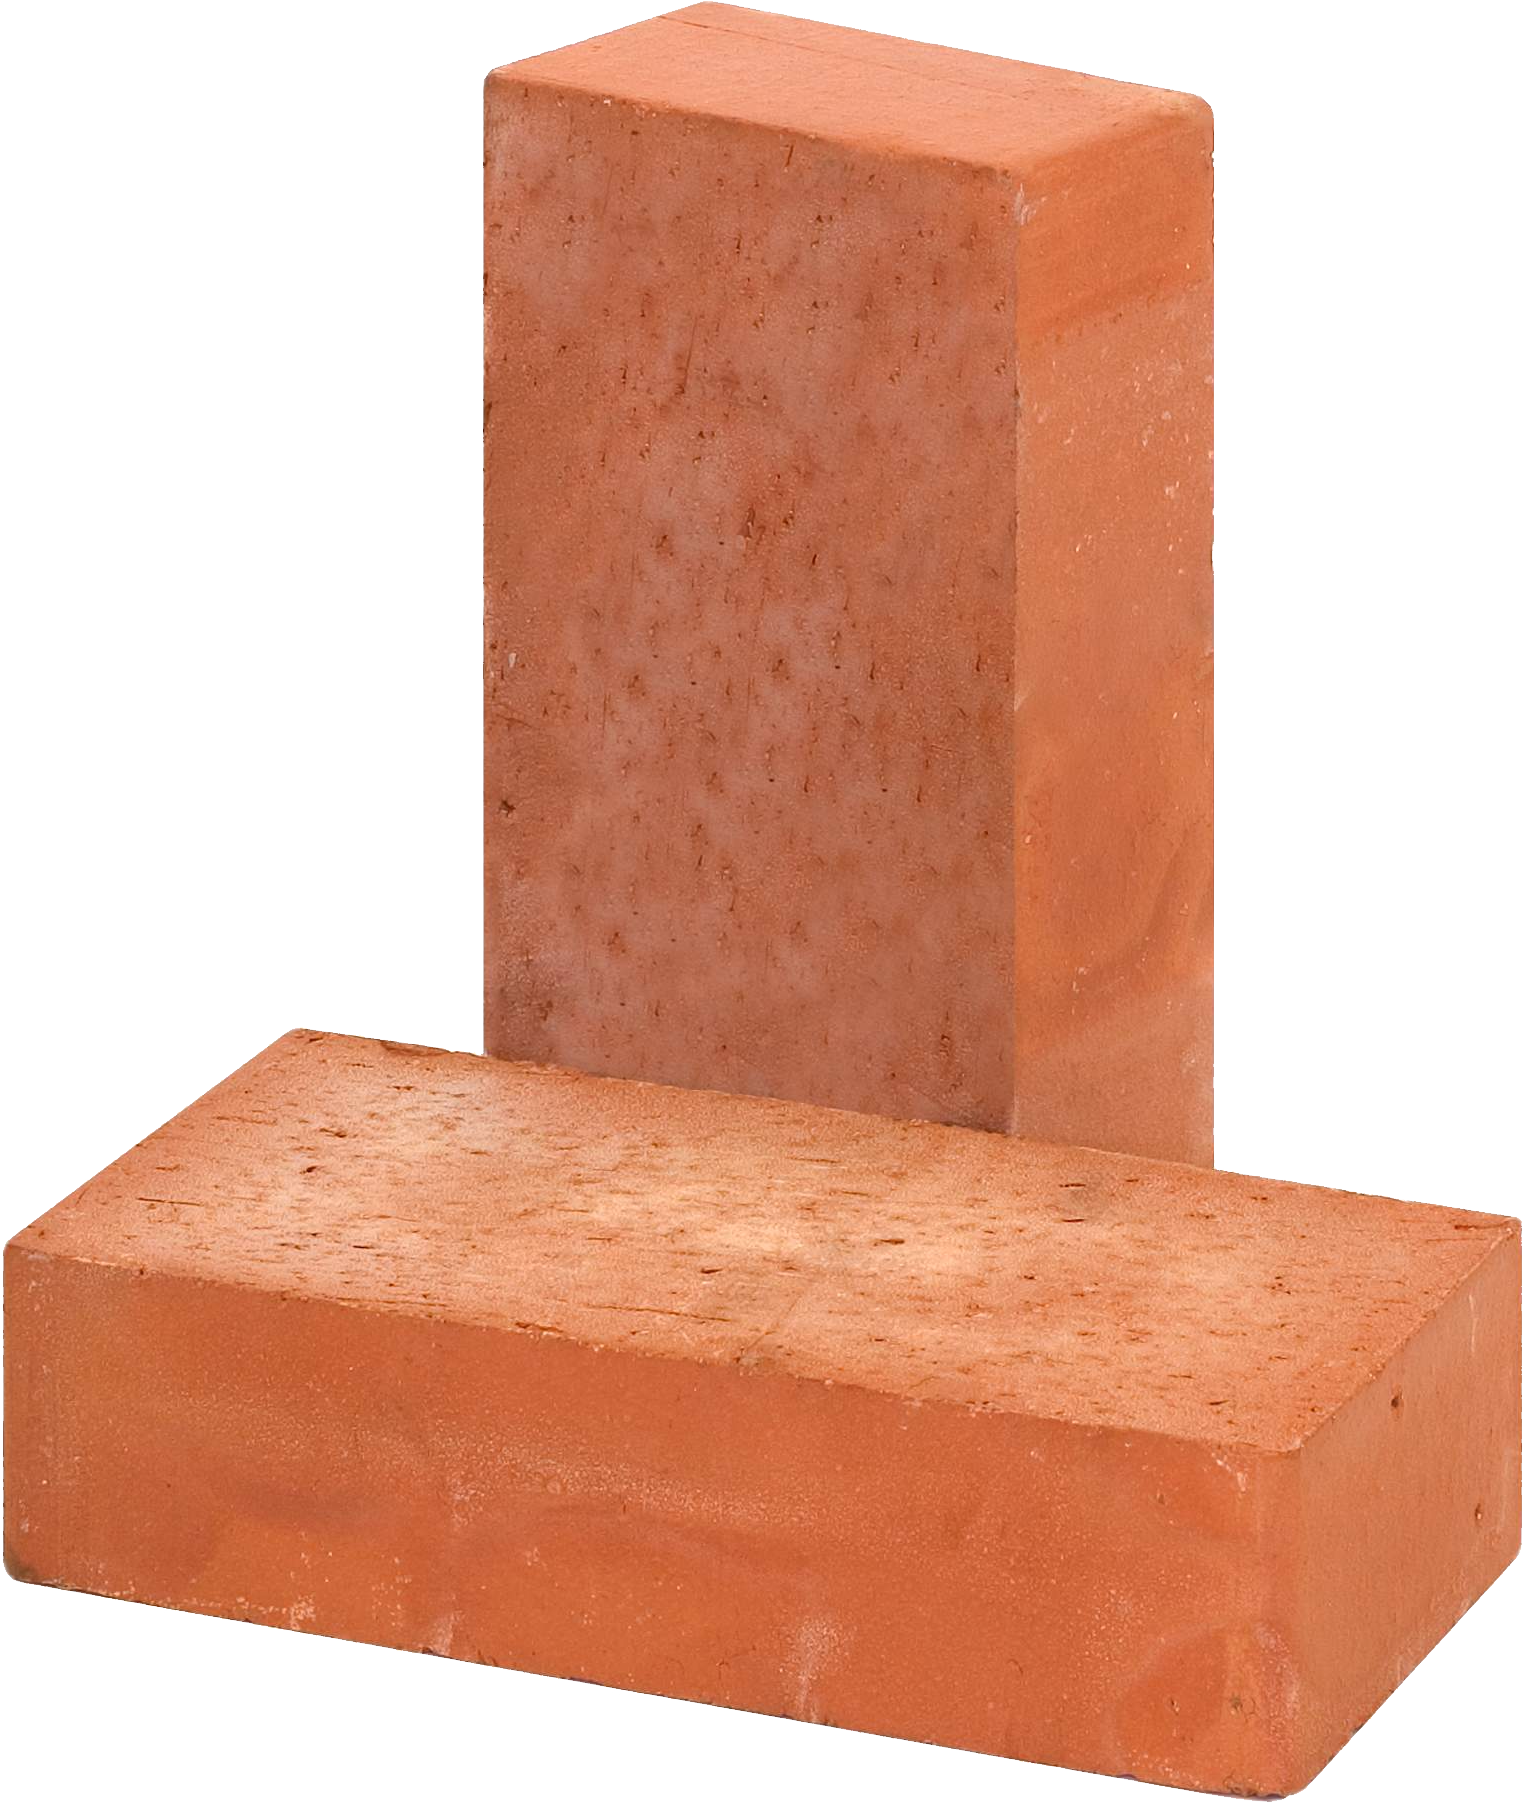 Bricks PNG - 6243